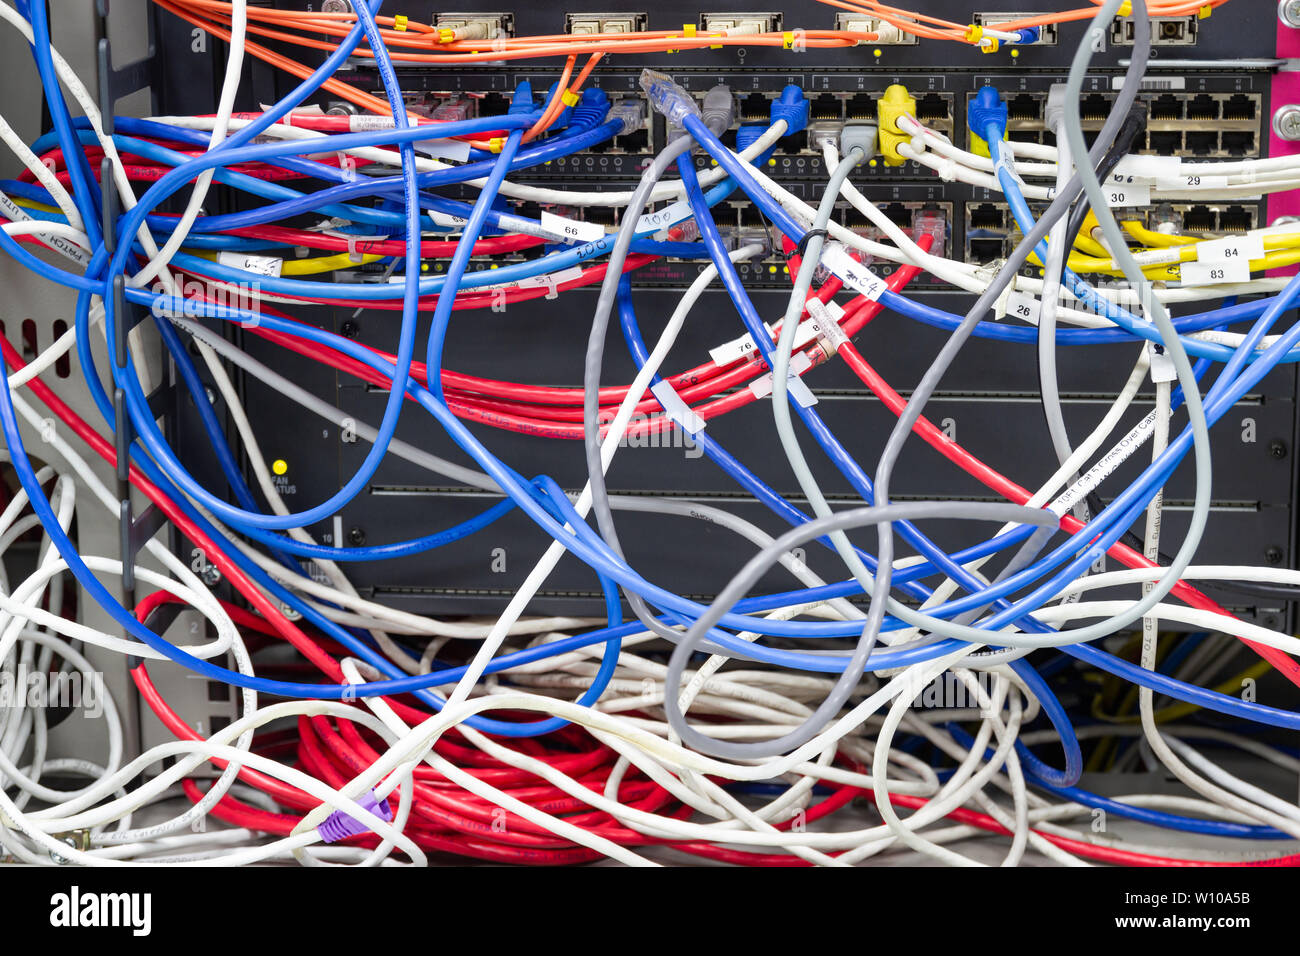 Bangkok Thailand: - Juni 25, 2019: - Kabel-Netzwerk im Serverraum Kabelsalat von Schlecht verlegtes Kabel Konzept organisierten Verkabelung im Serverraum Stockfoto